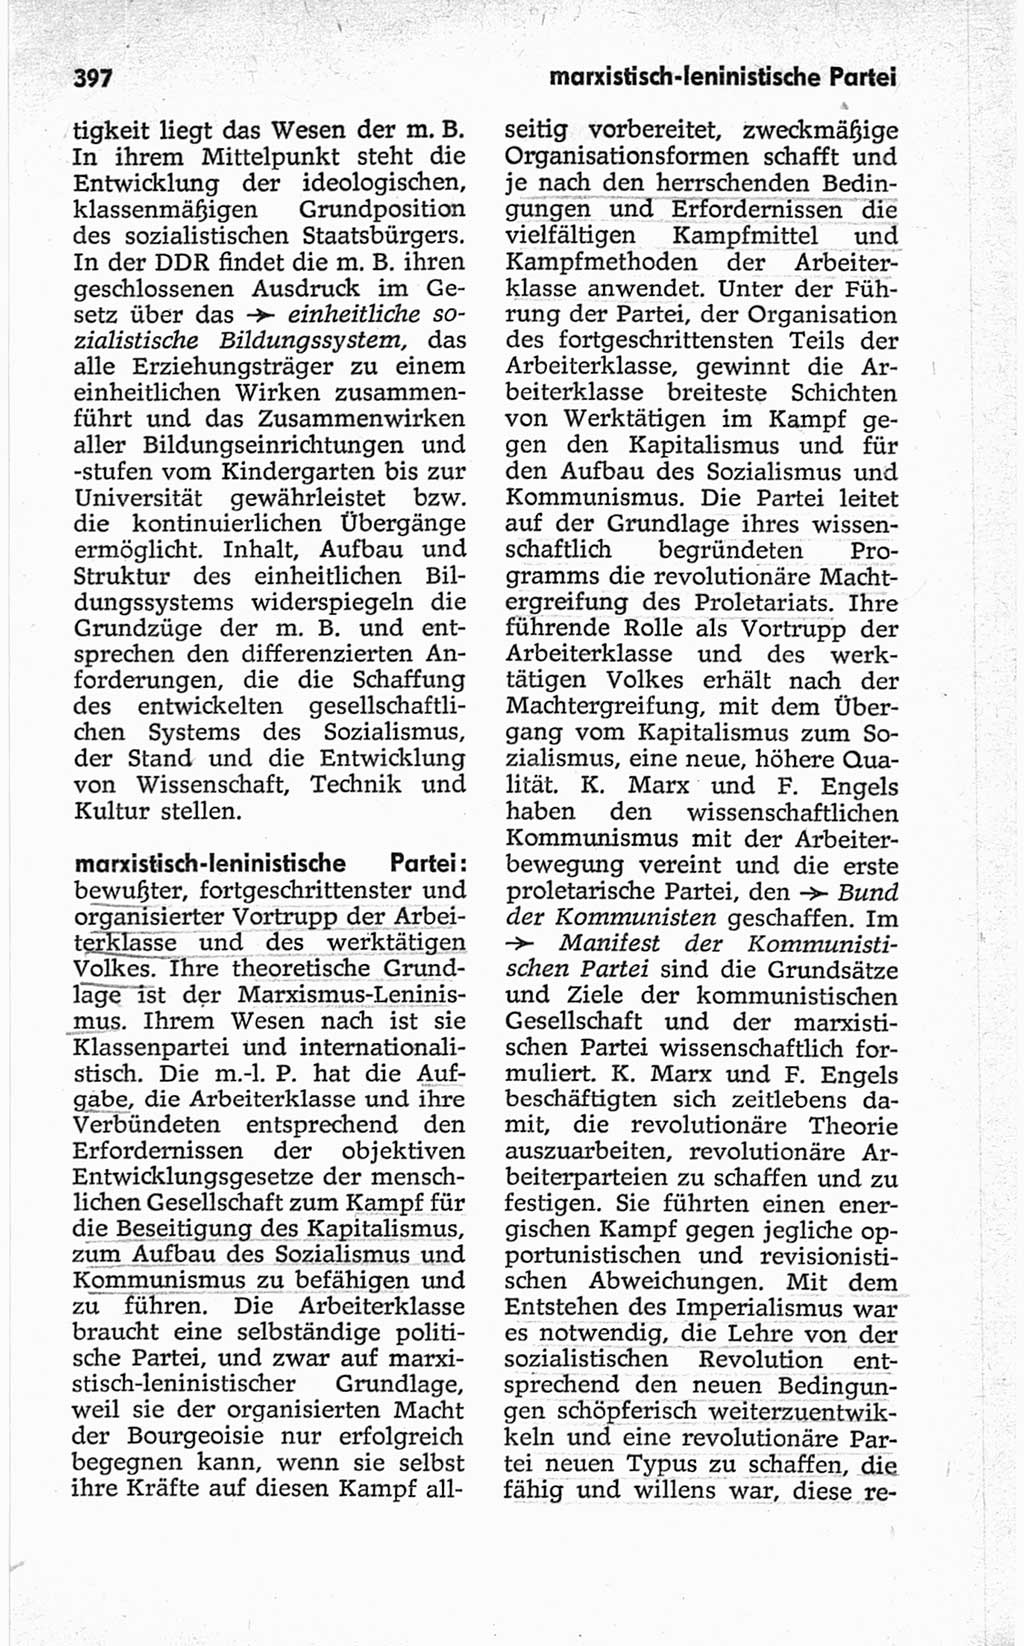 Kleines politisches Wörterbuch [Deutsche Demokratische Republik (DDR)] 1967, Seite 397 (Kl. pol. Wb. DDR 1967, S. 397)